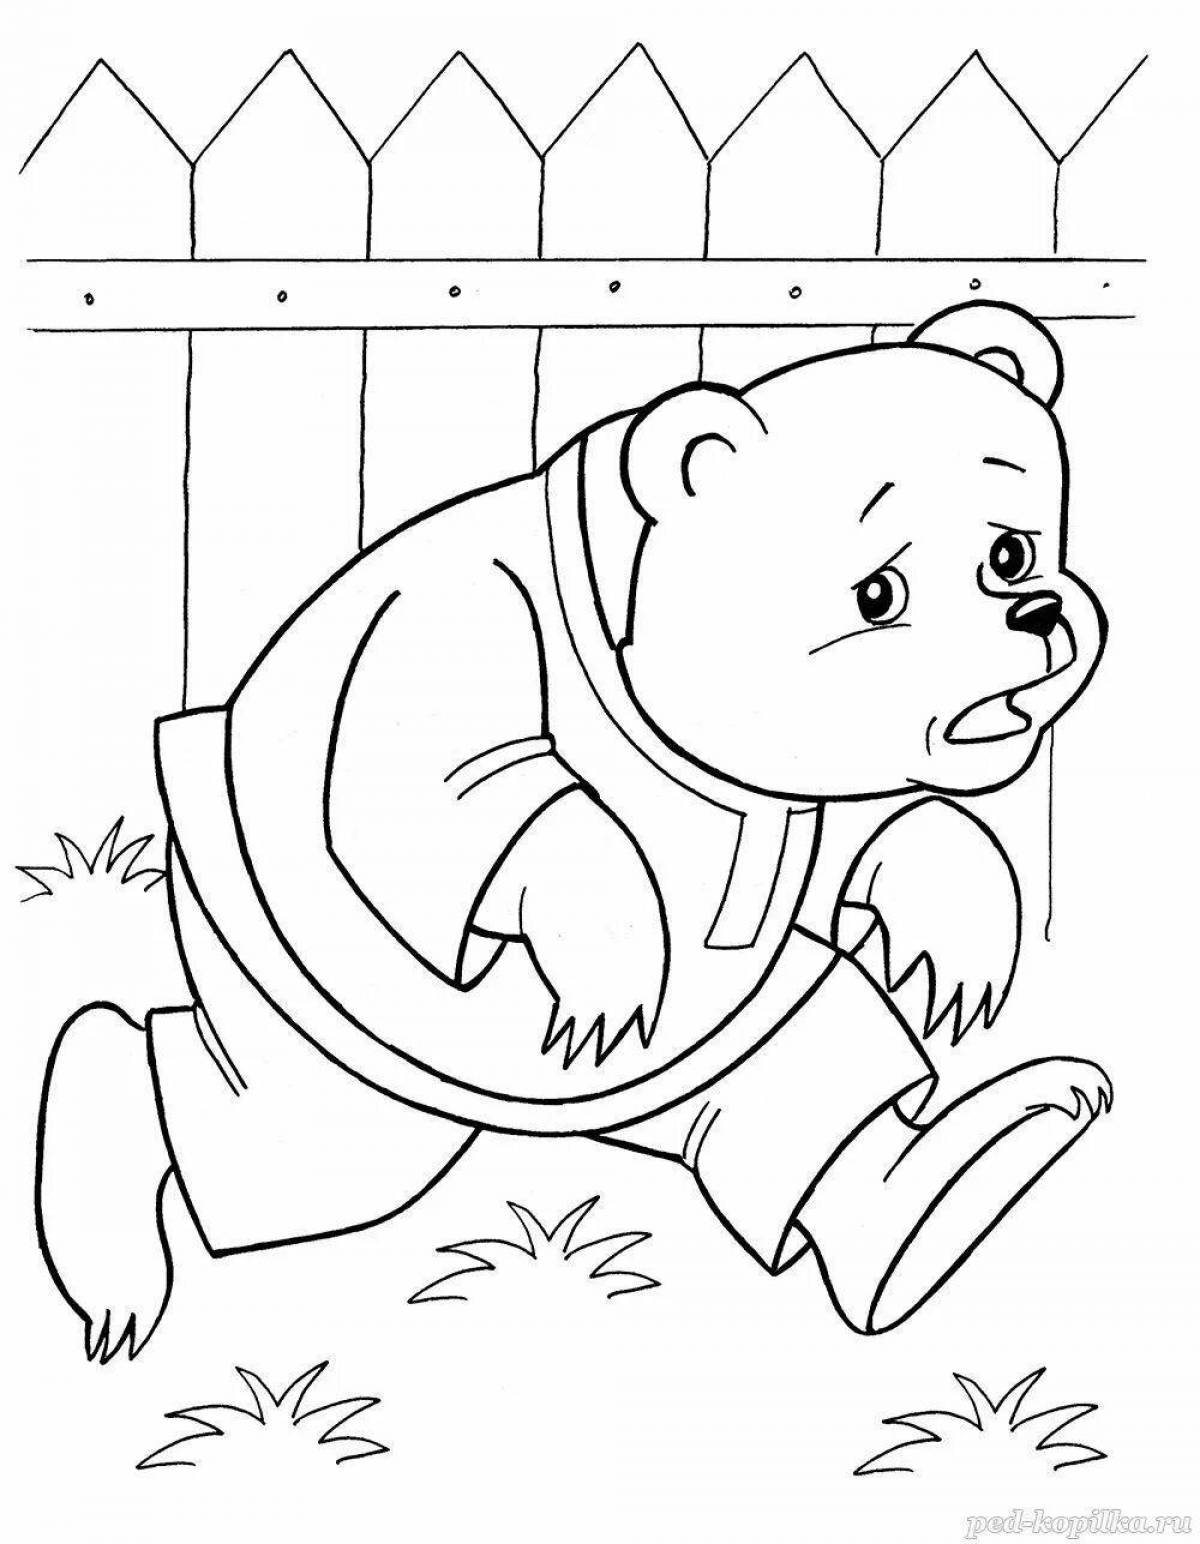 Fantastic bear coloring book